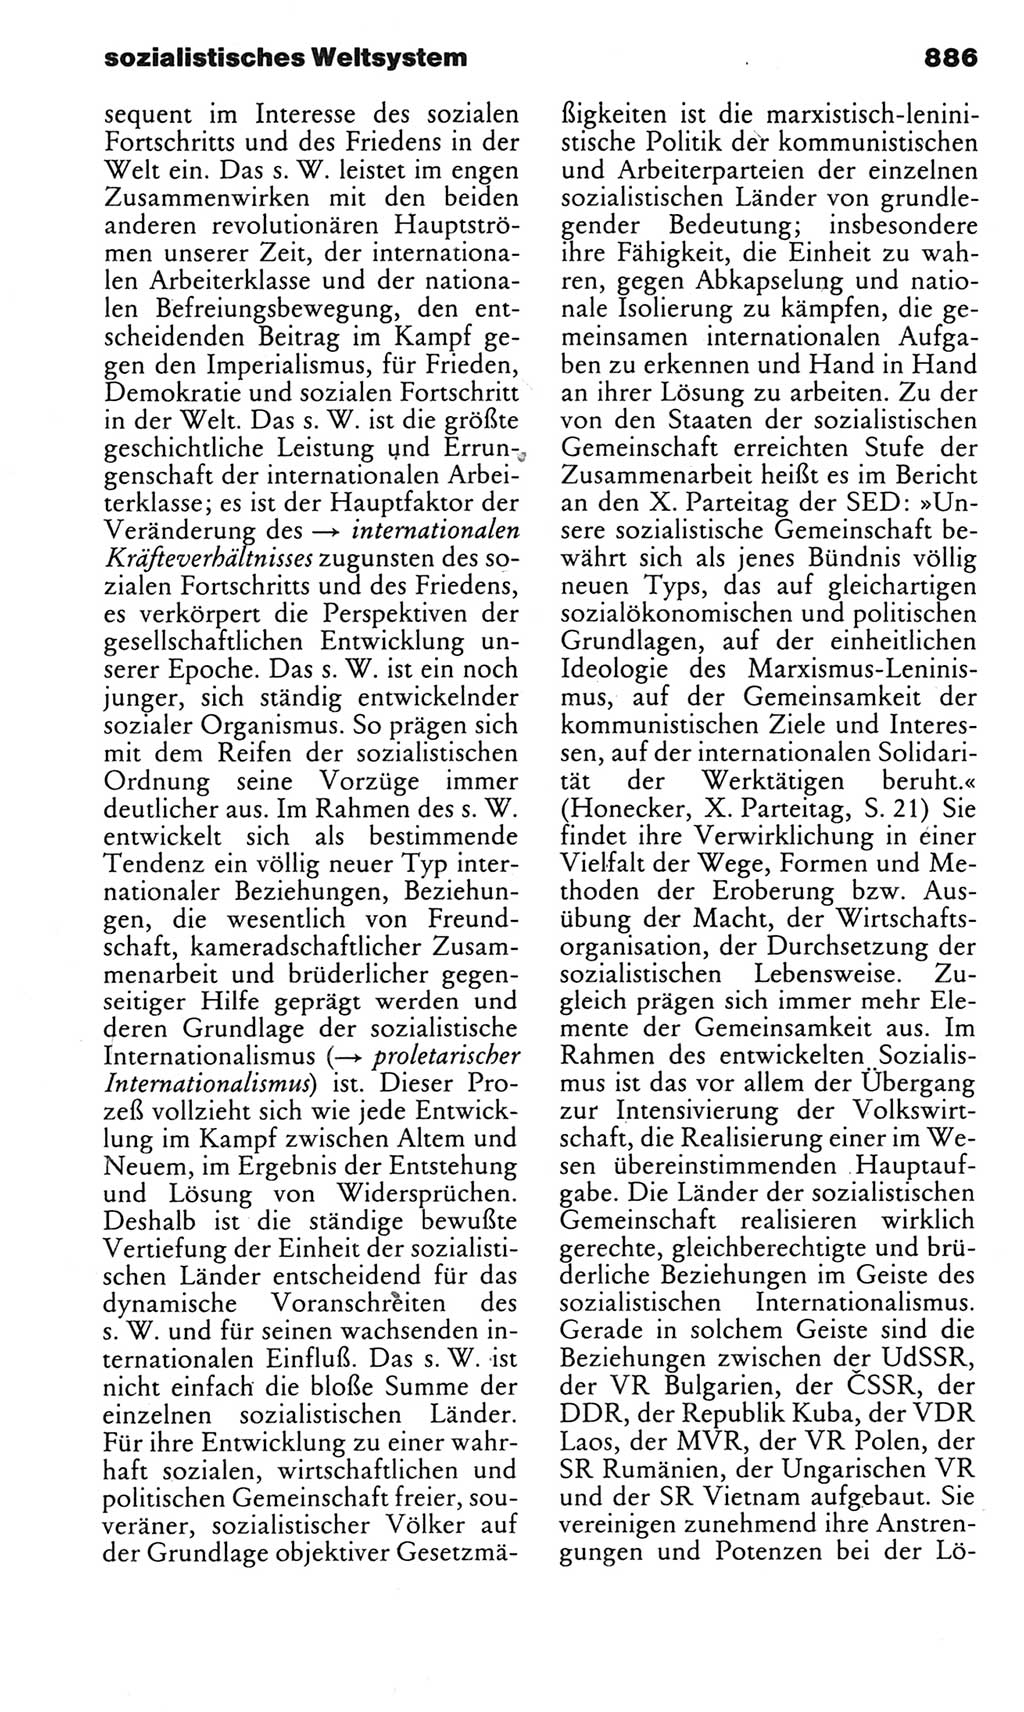 Kleines politisches Wörterbuch [Deutsche Demokratische Republik (DDR)] 1983, Seite 886 (Kl. pol. Wb. DDR 1983, S. 886)